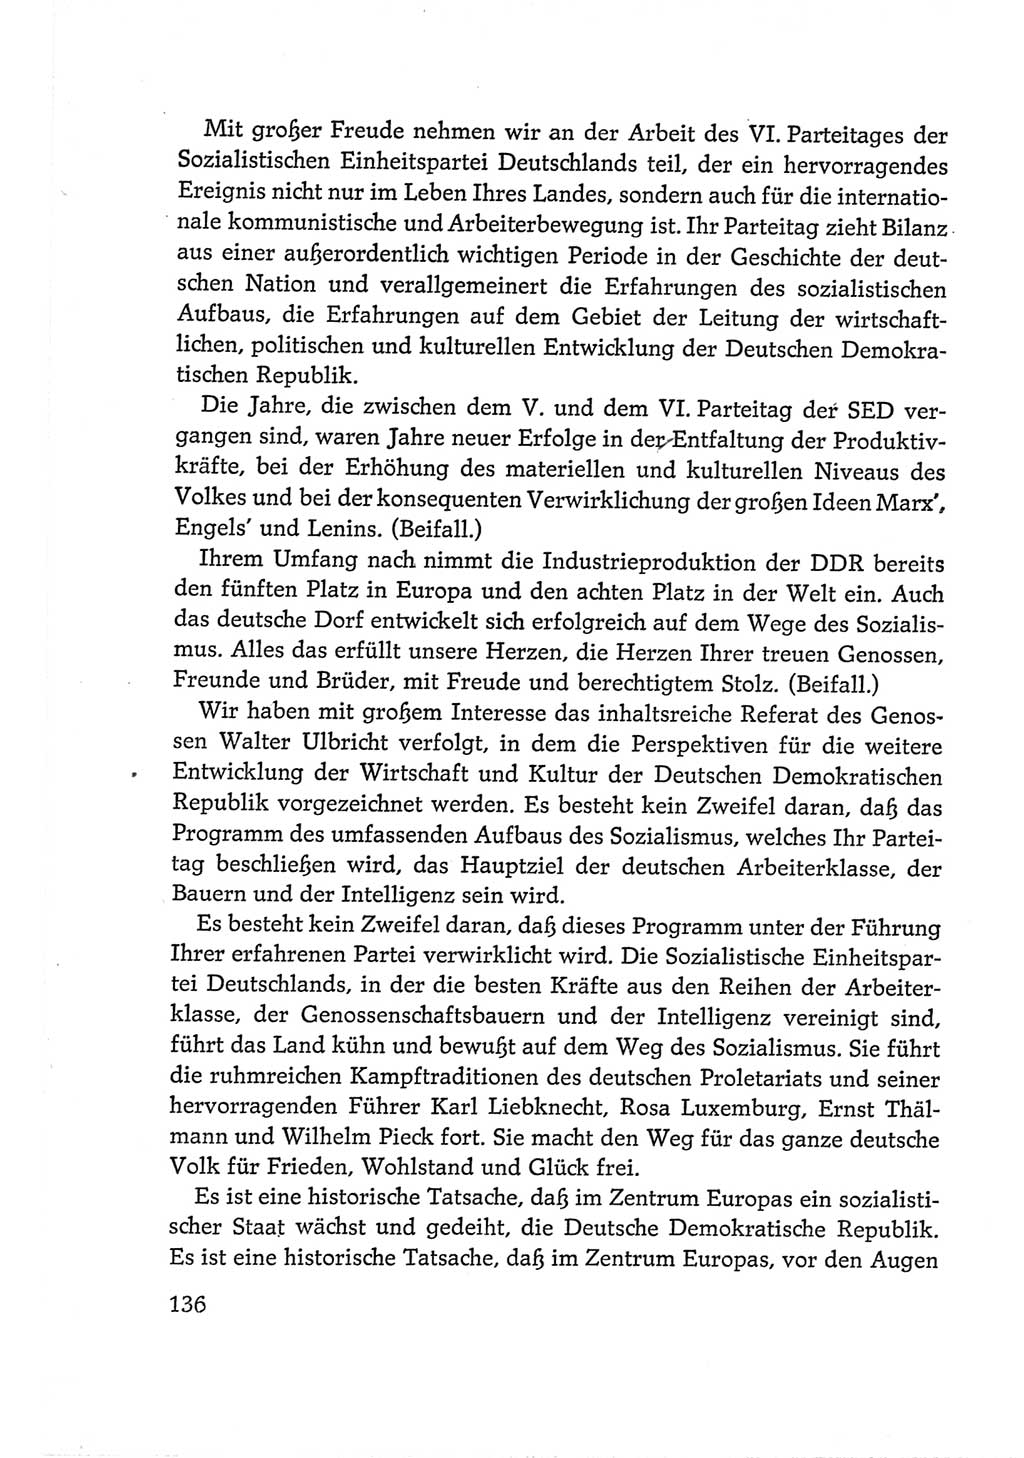 Protokoll der Verhandlungen des Ⅵ. Parteitages der Sozialistischen Einheitspartei Deutschlands (SED) [Deutsche Demokratische Republik (DDR)] 1963, Band Ⅱ, Seite 136 (Prot. Verh. Ⅵ. PT SED DDR 1963, Bd. Ⅱ, S. 136)